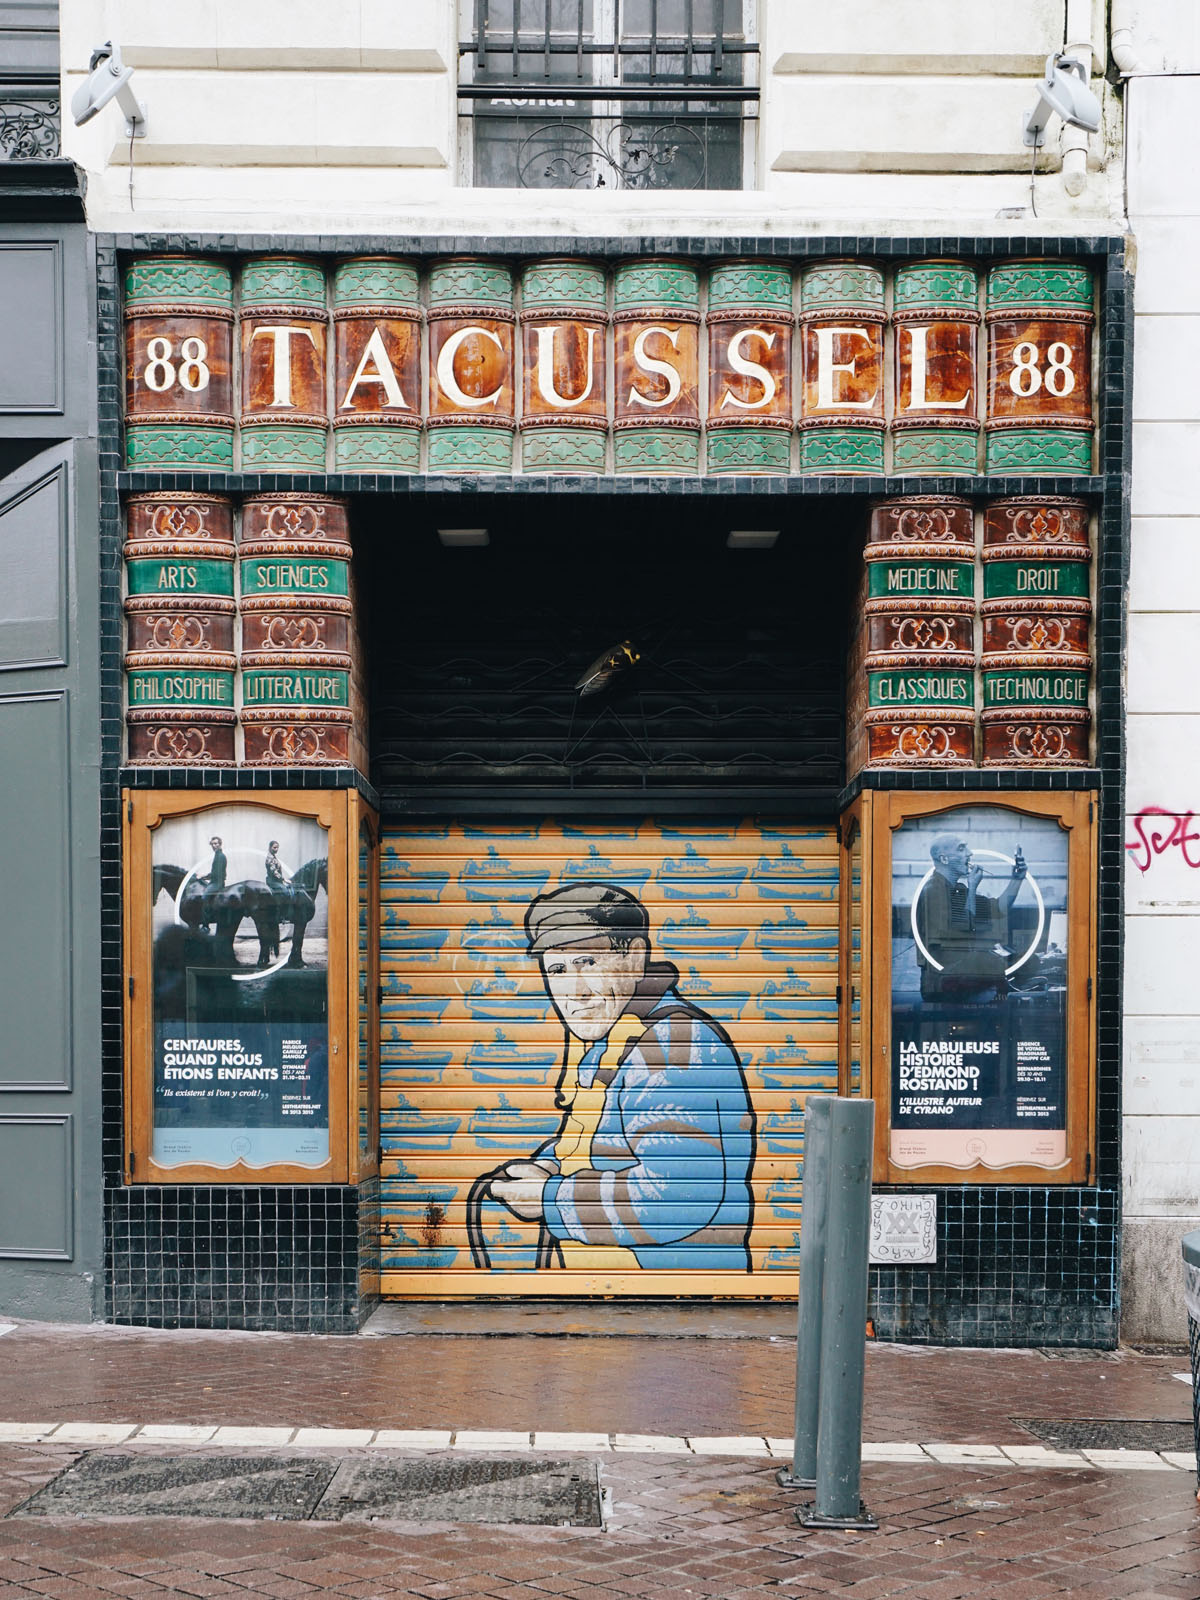 Tacussel Marseille